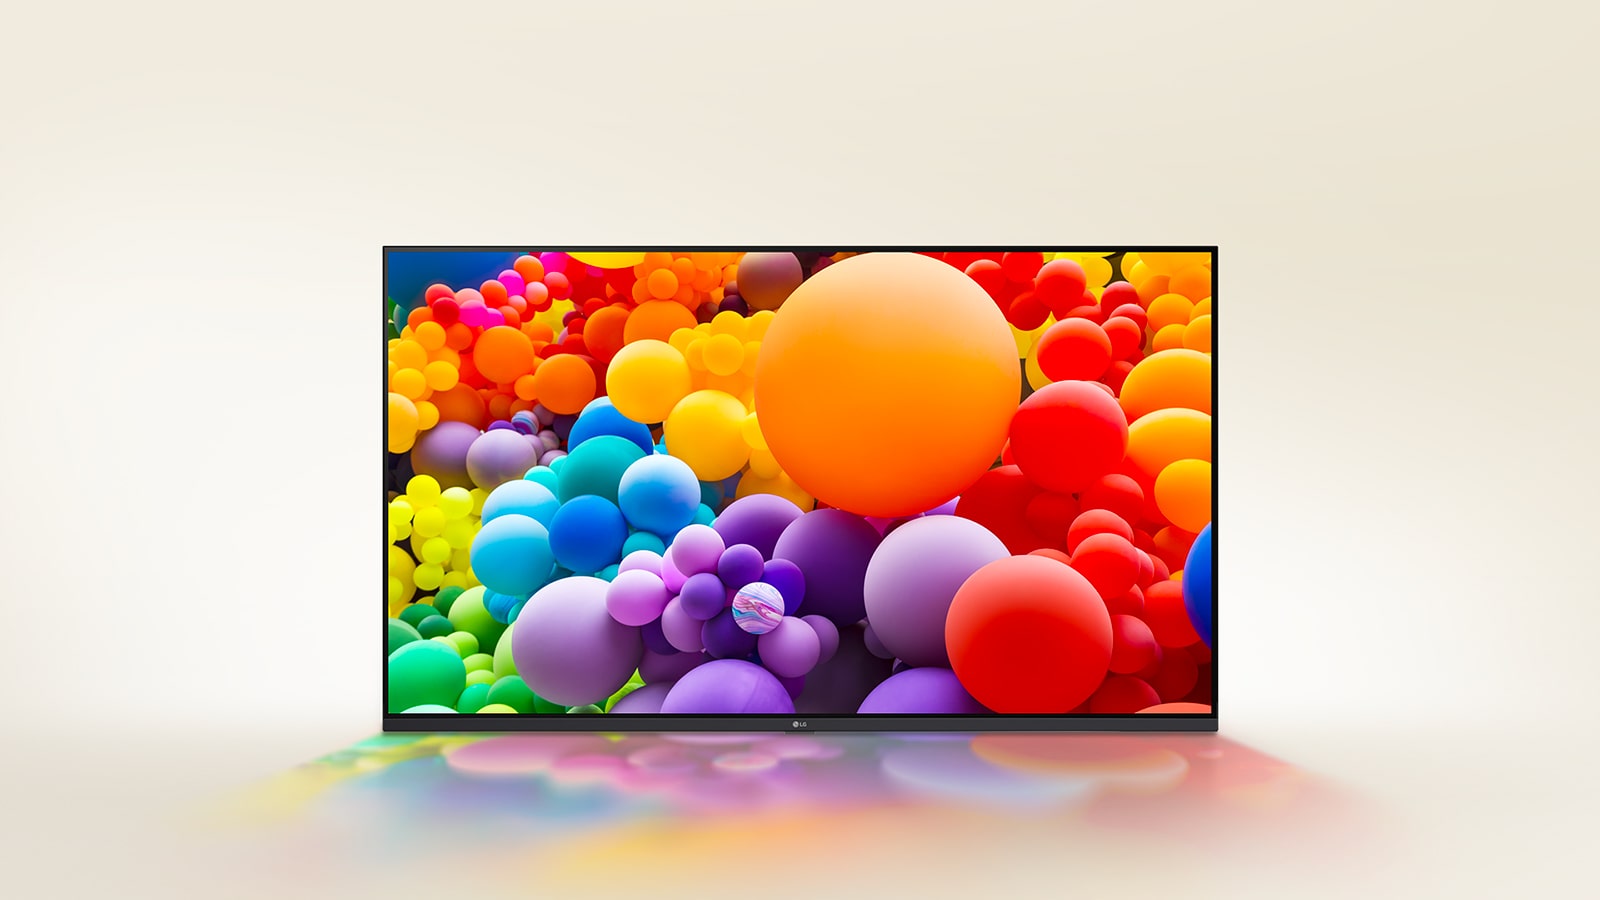 Πολλά μπαλόνια με διαφορετικά χρώματα εμφανίζονται στην LG UHD TV.